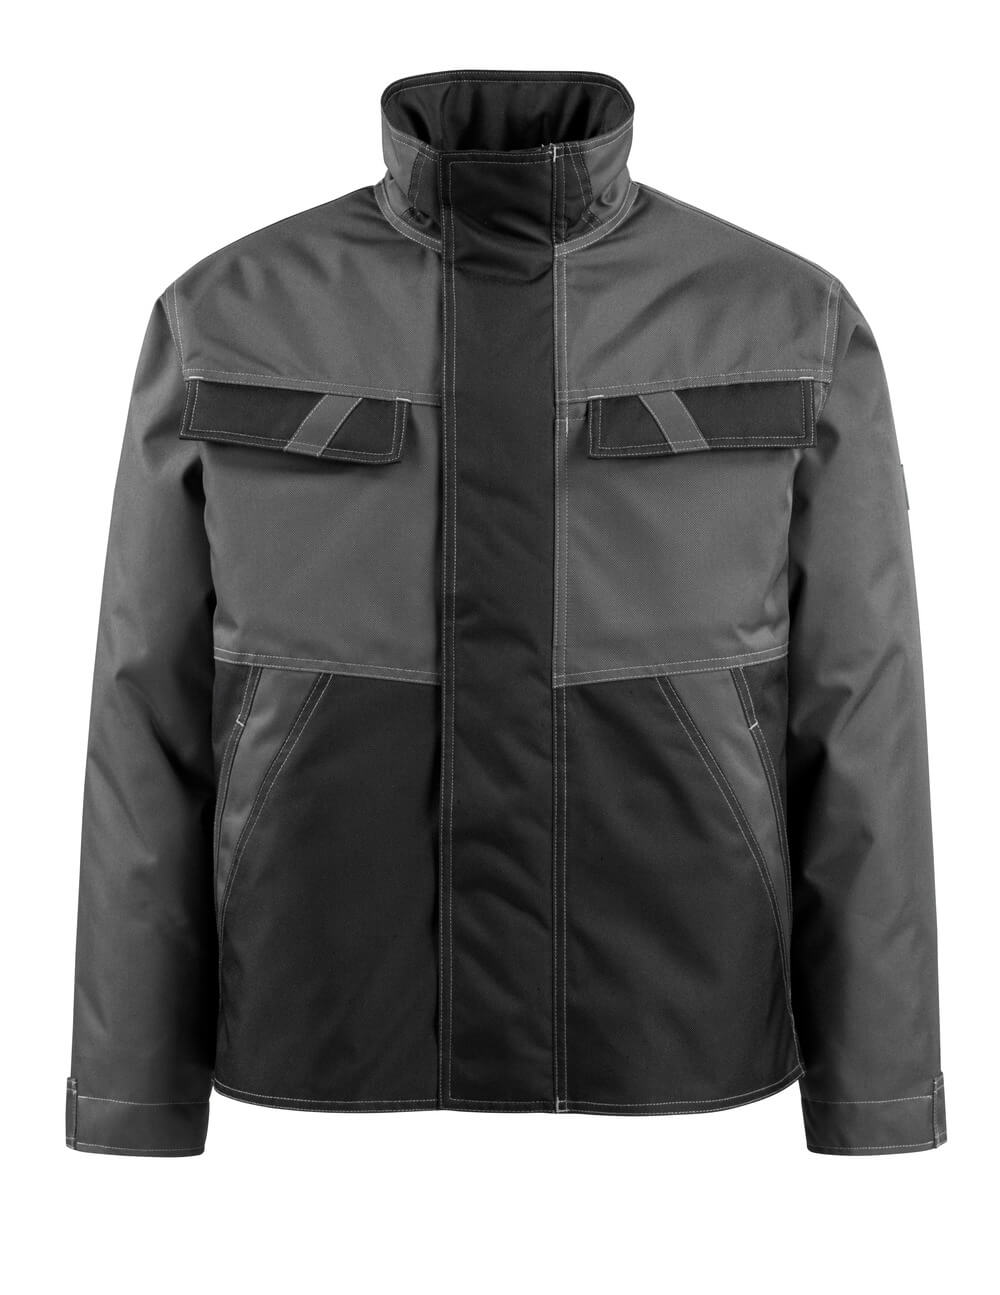 15735-126-1809 Winter Jacket - dark anthracite/black